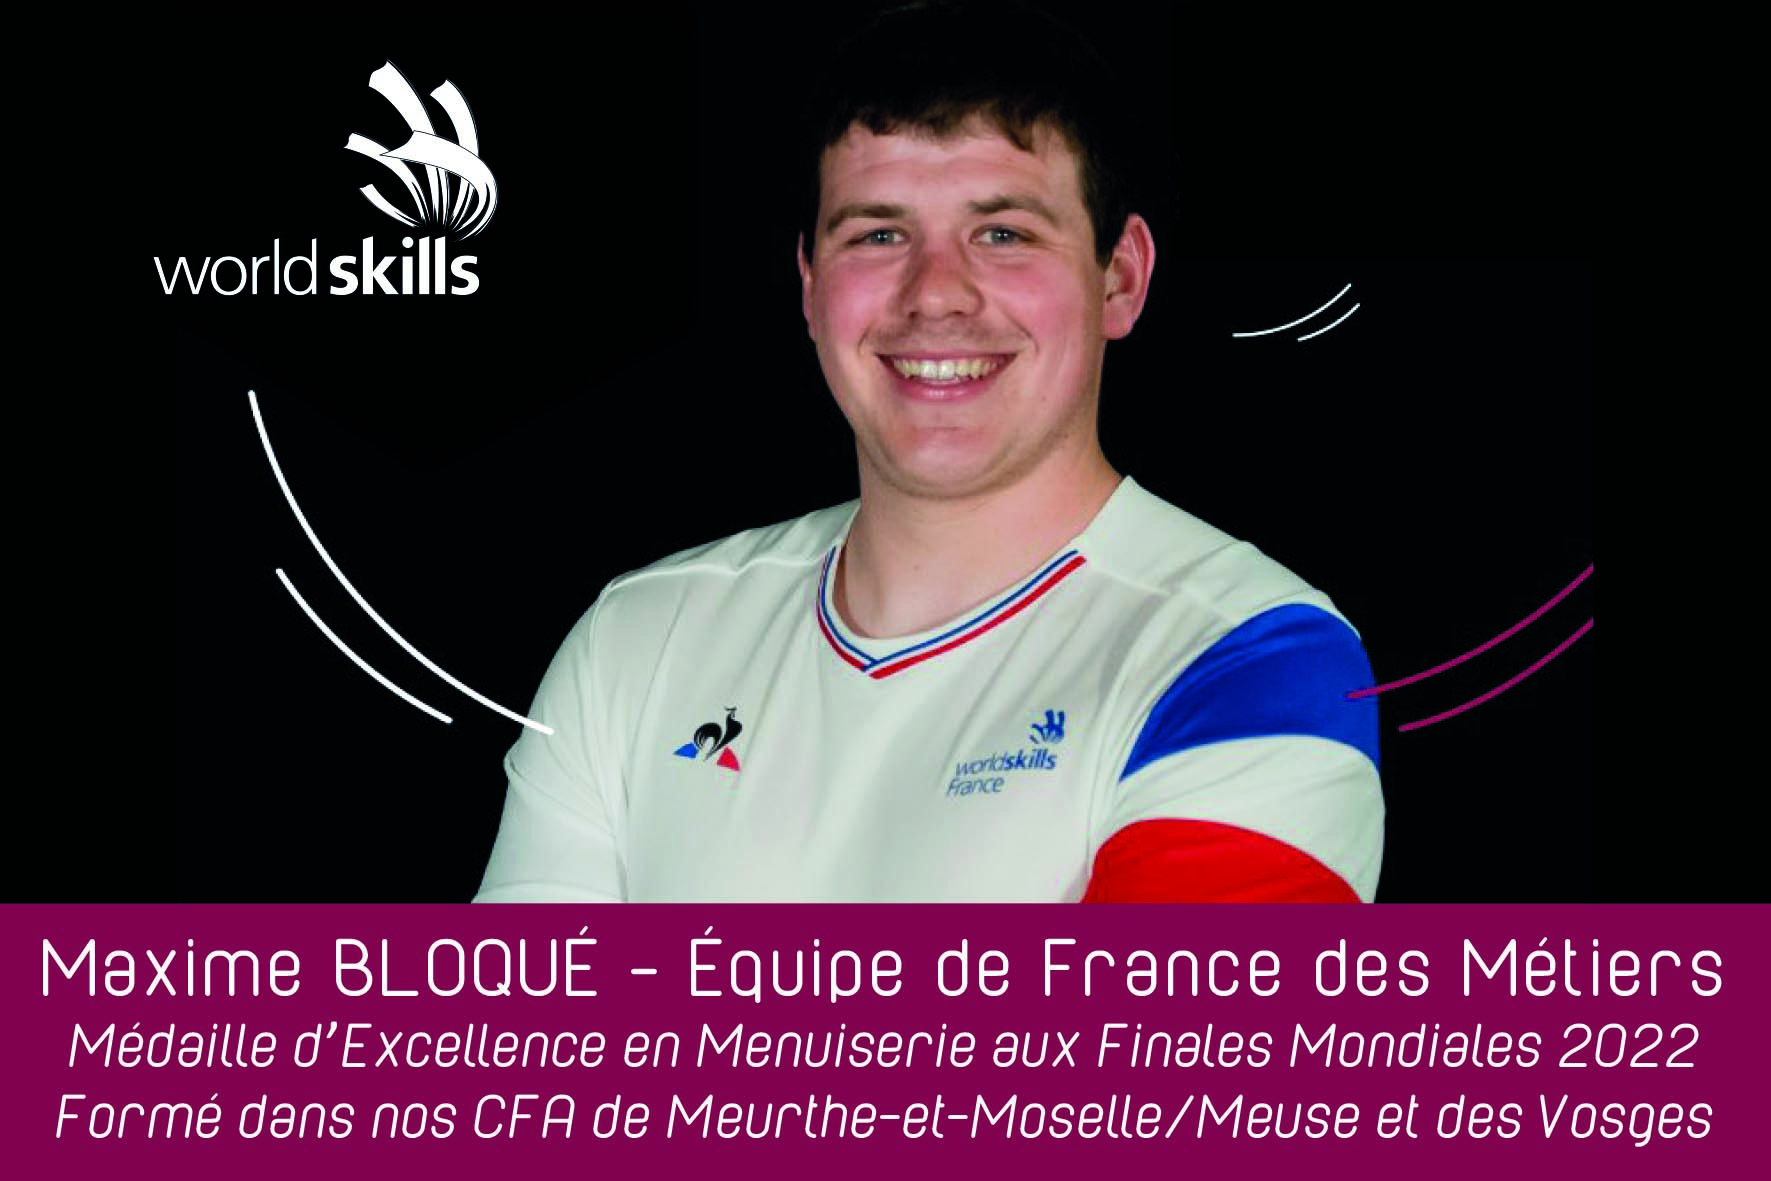 Le vosgien Maxime Bloqué sélectionné en équipe de France des métiers, médaille d'excellence en finale mondiale de menuiserie.